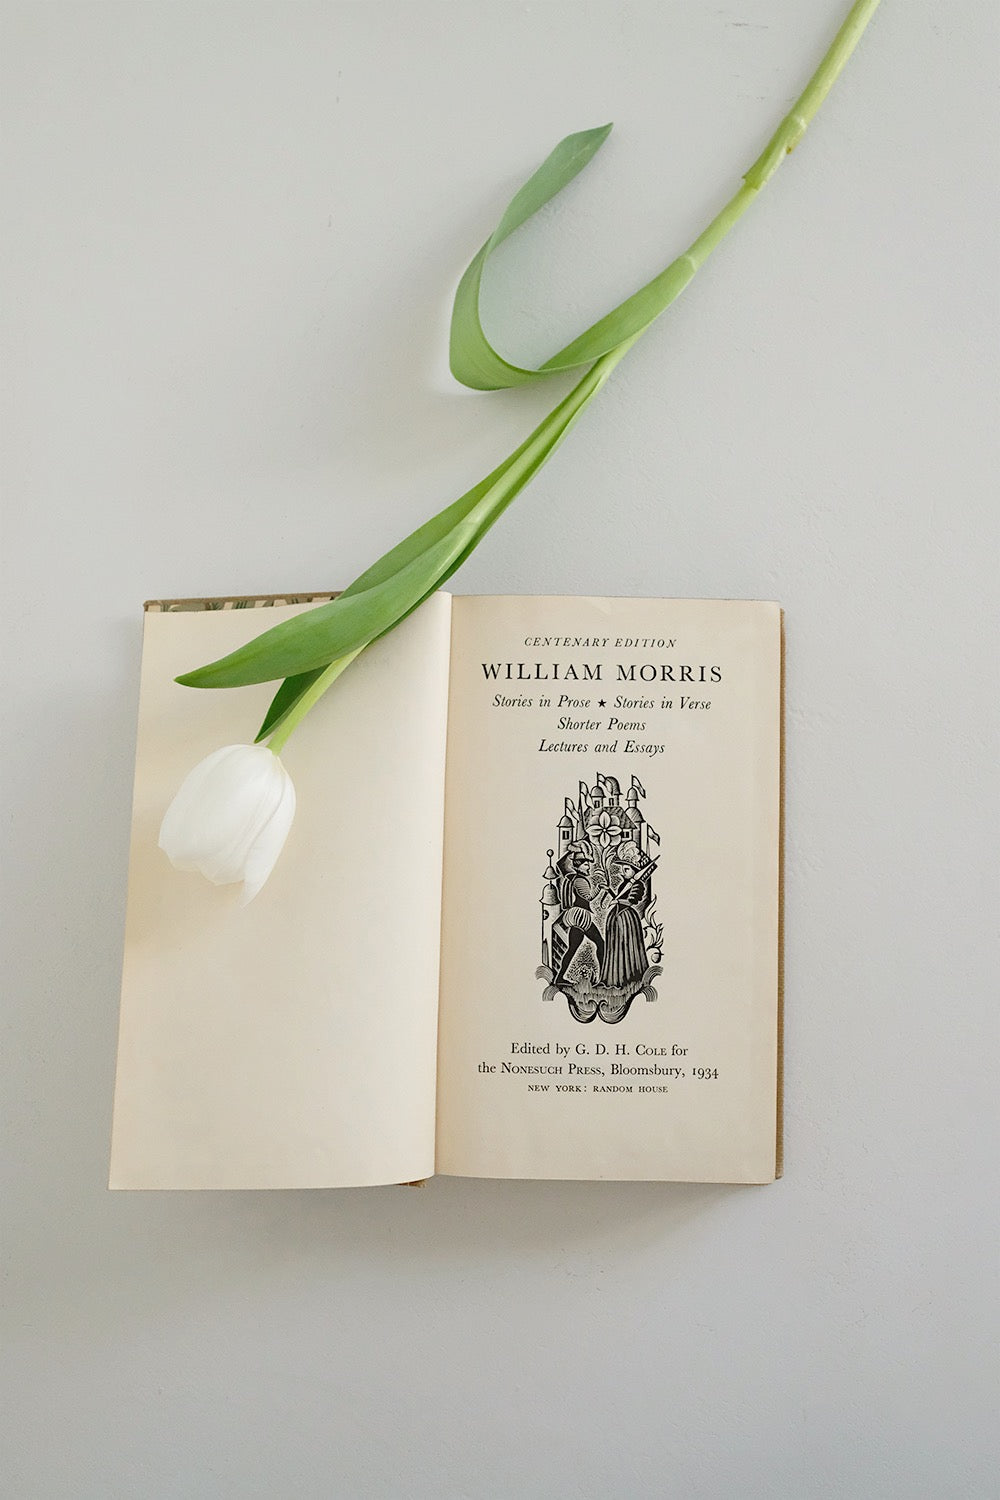 William Morris book (1st edition)